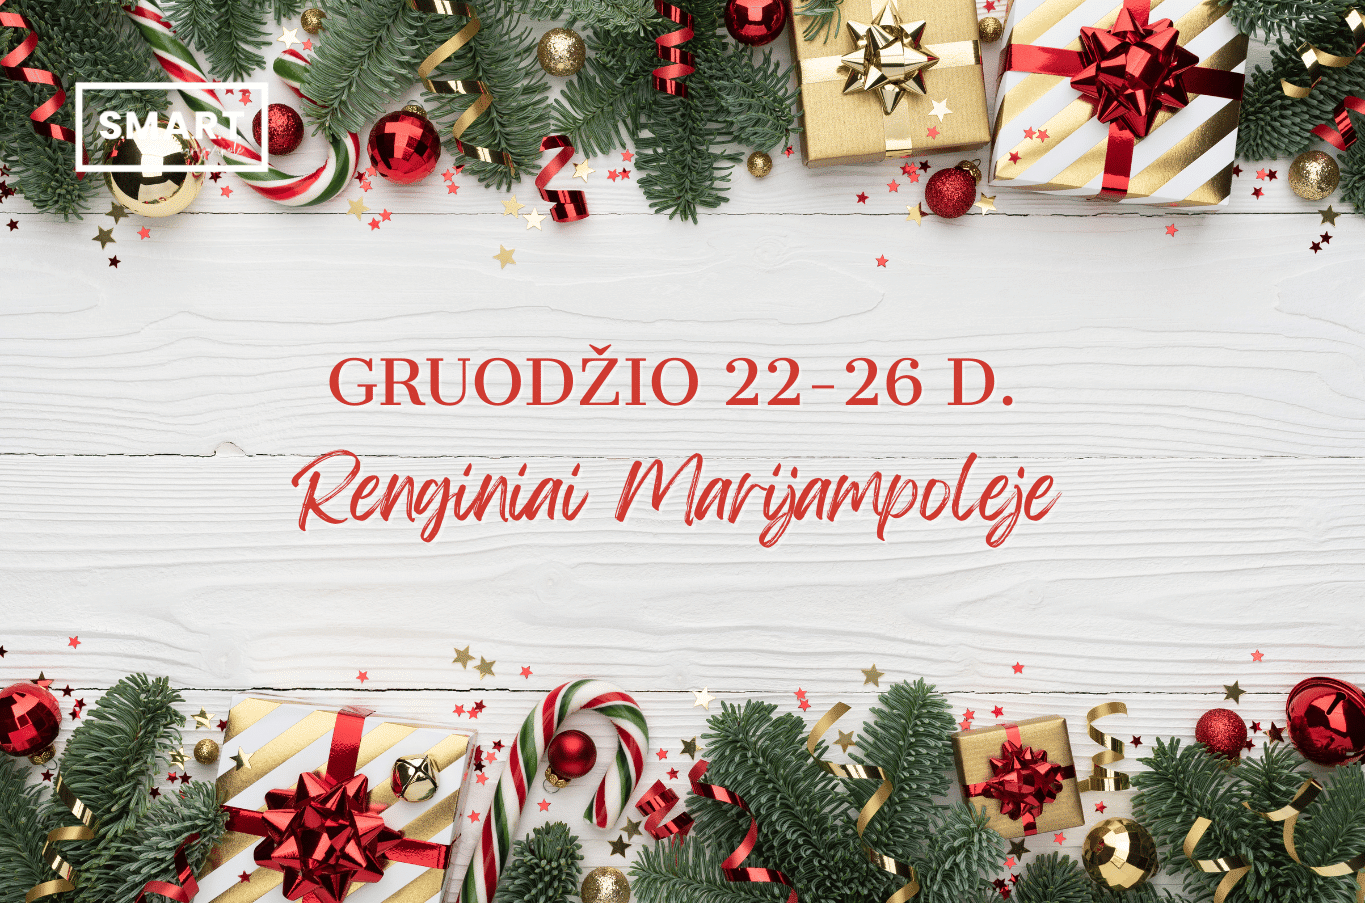 You are currently viewing Pasitikime šv. Kalėdas Marijampolėje! Renginių programa | 12.22-12.26